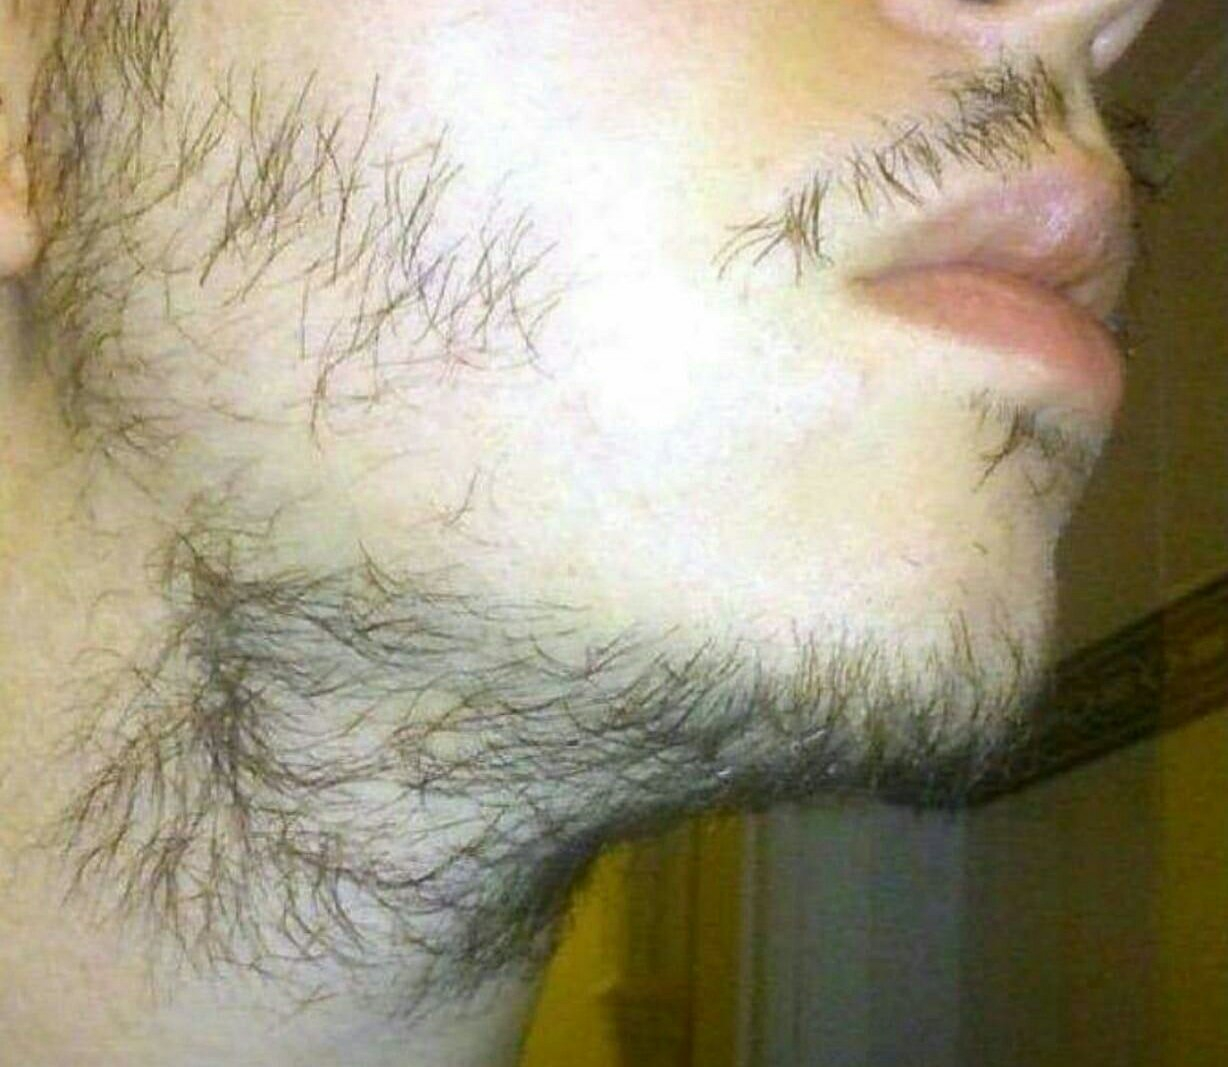 Борода линия подбородка